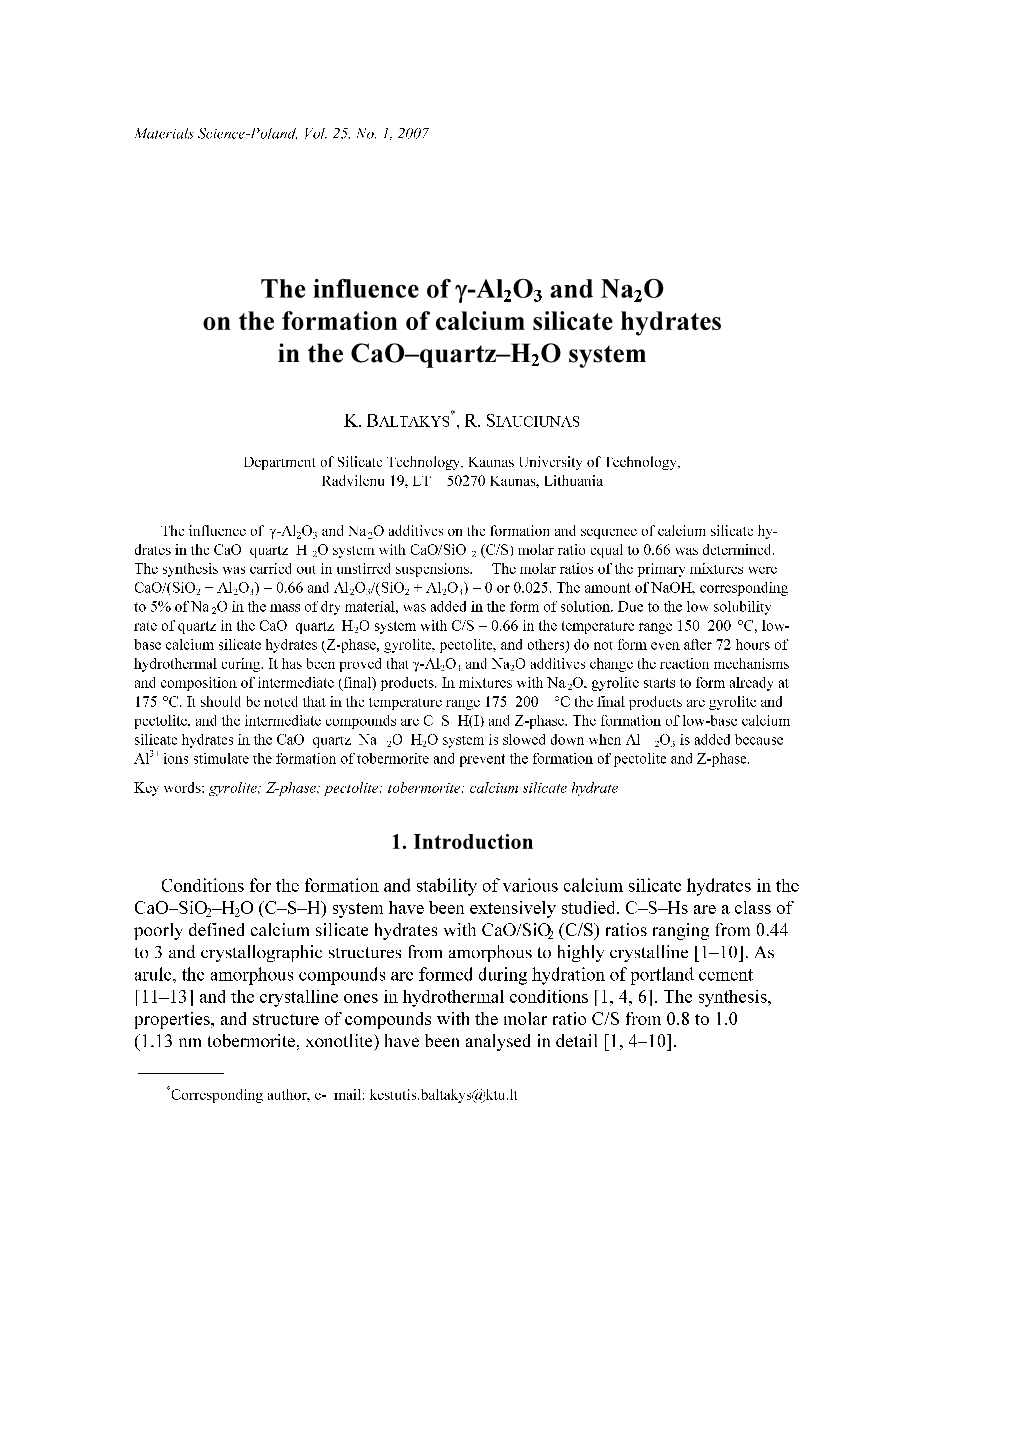 The Influence of Γ-Al2o3 and Na2o on the Formation of Calcium Silicate Hydrates